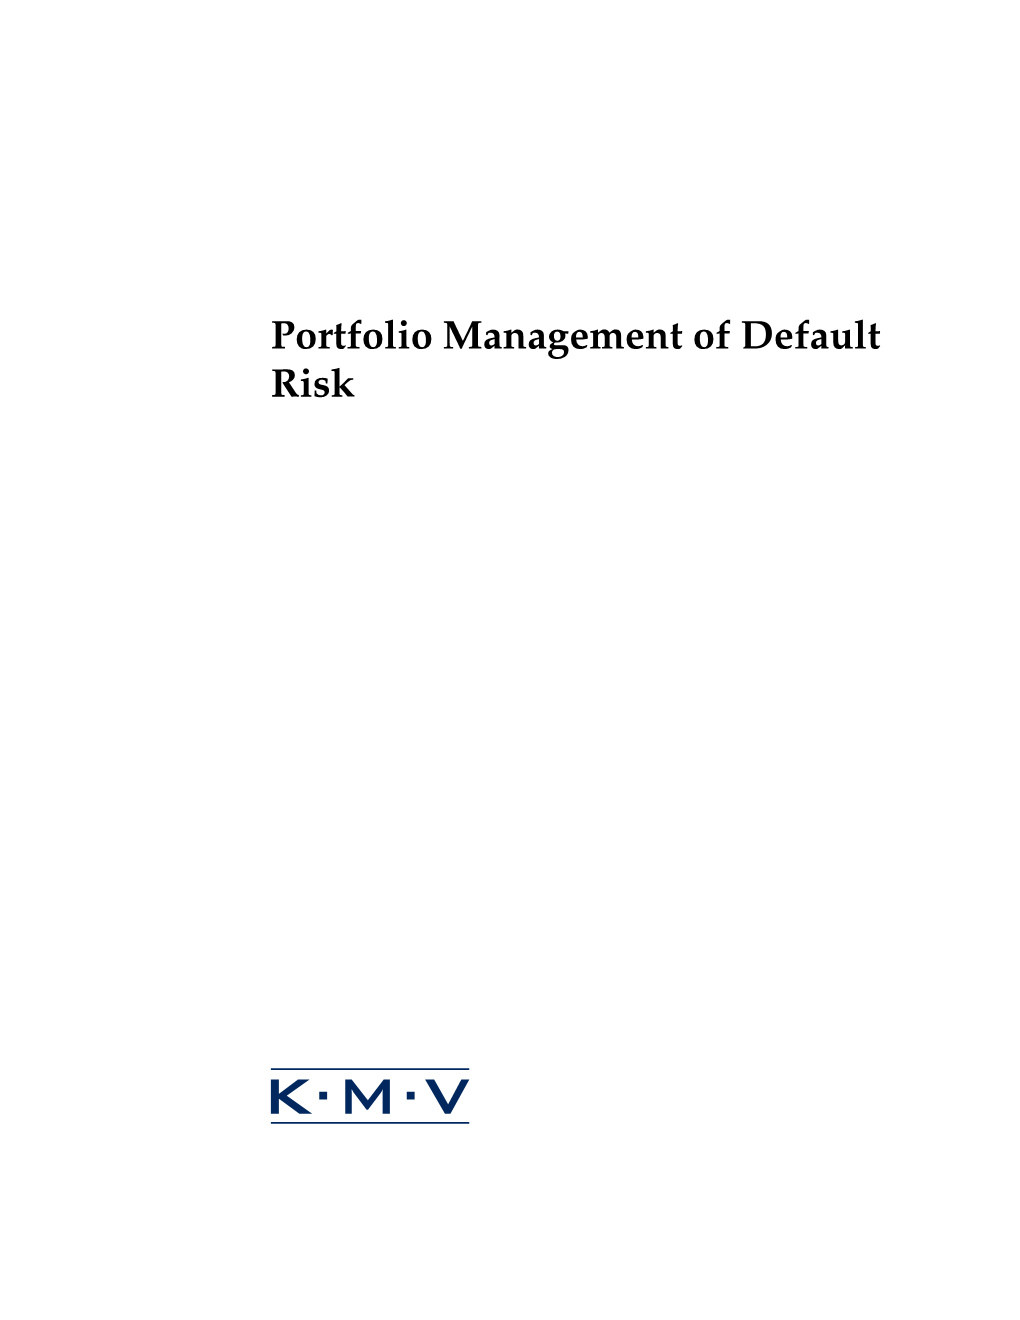 Portfolio Management of Default Risk Portfolio Management of Default Risk